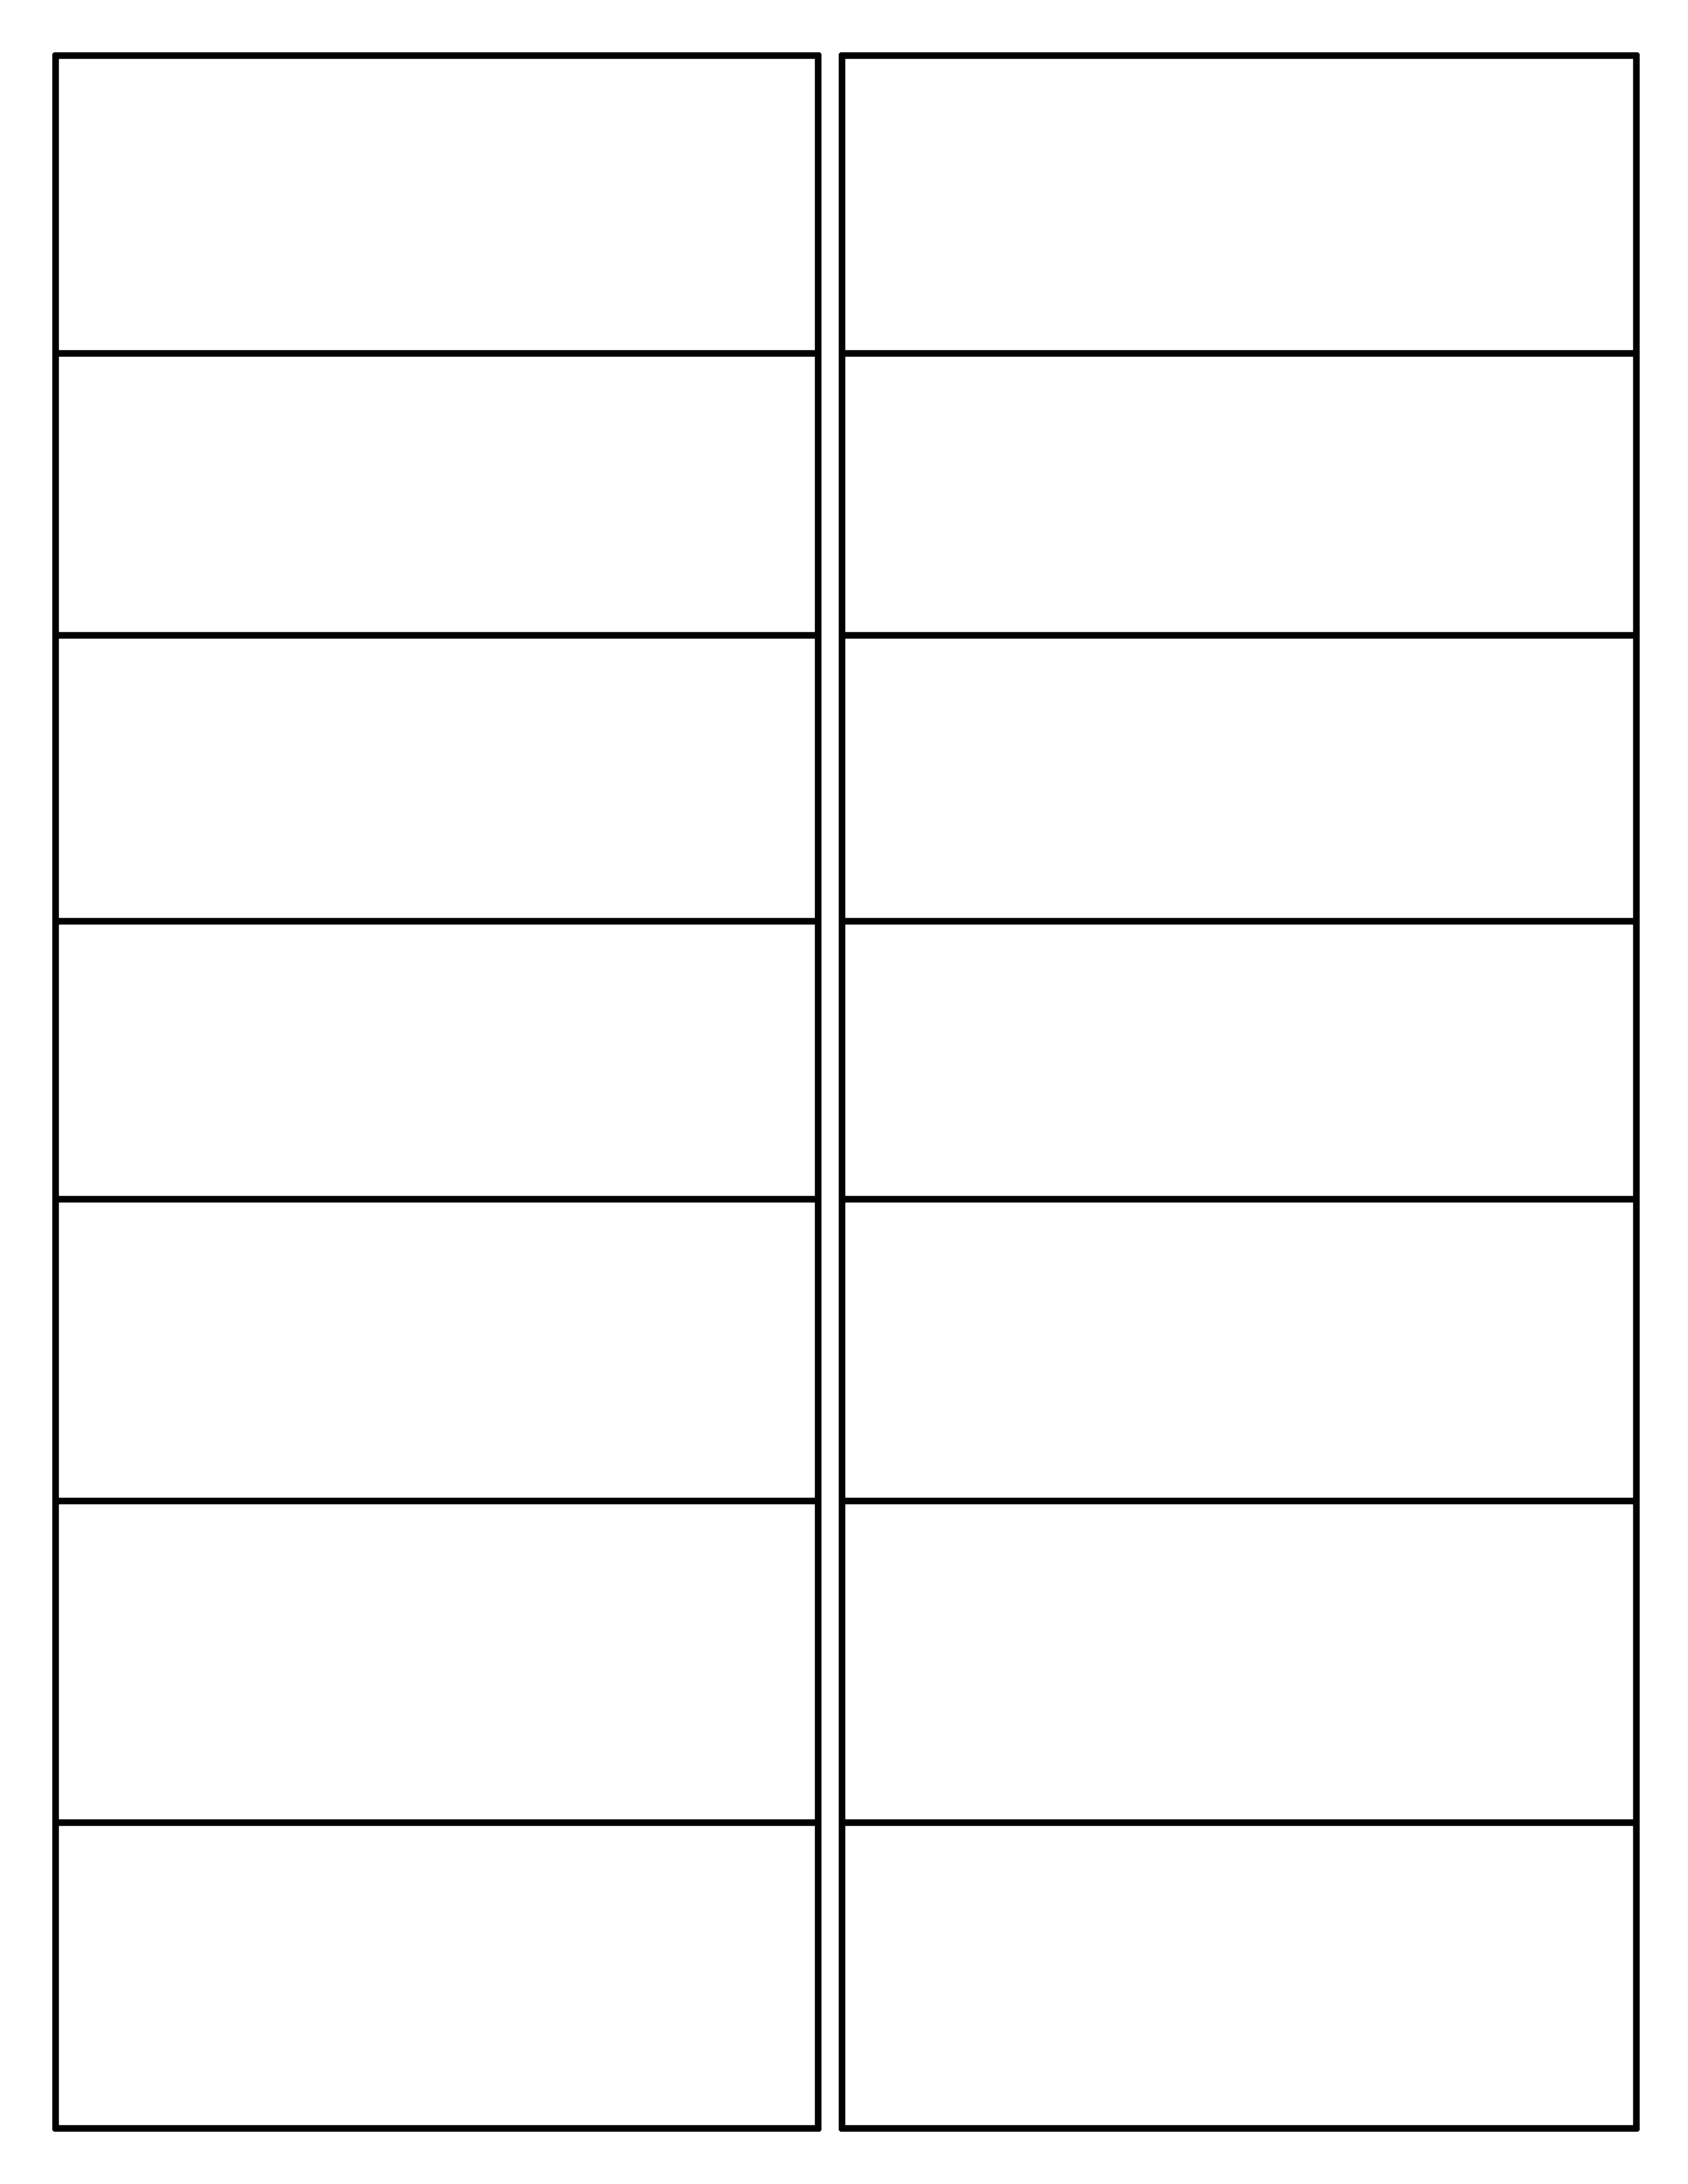 Разделить страницу на печать. Разметка для визиток на а4. Таблица пустая. Разметка для печати визиток. Лист разделенный на прямоугольники.